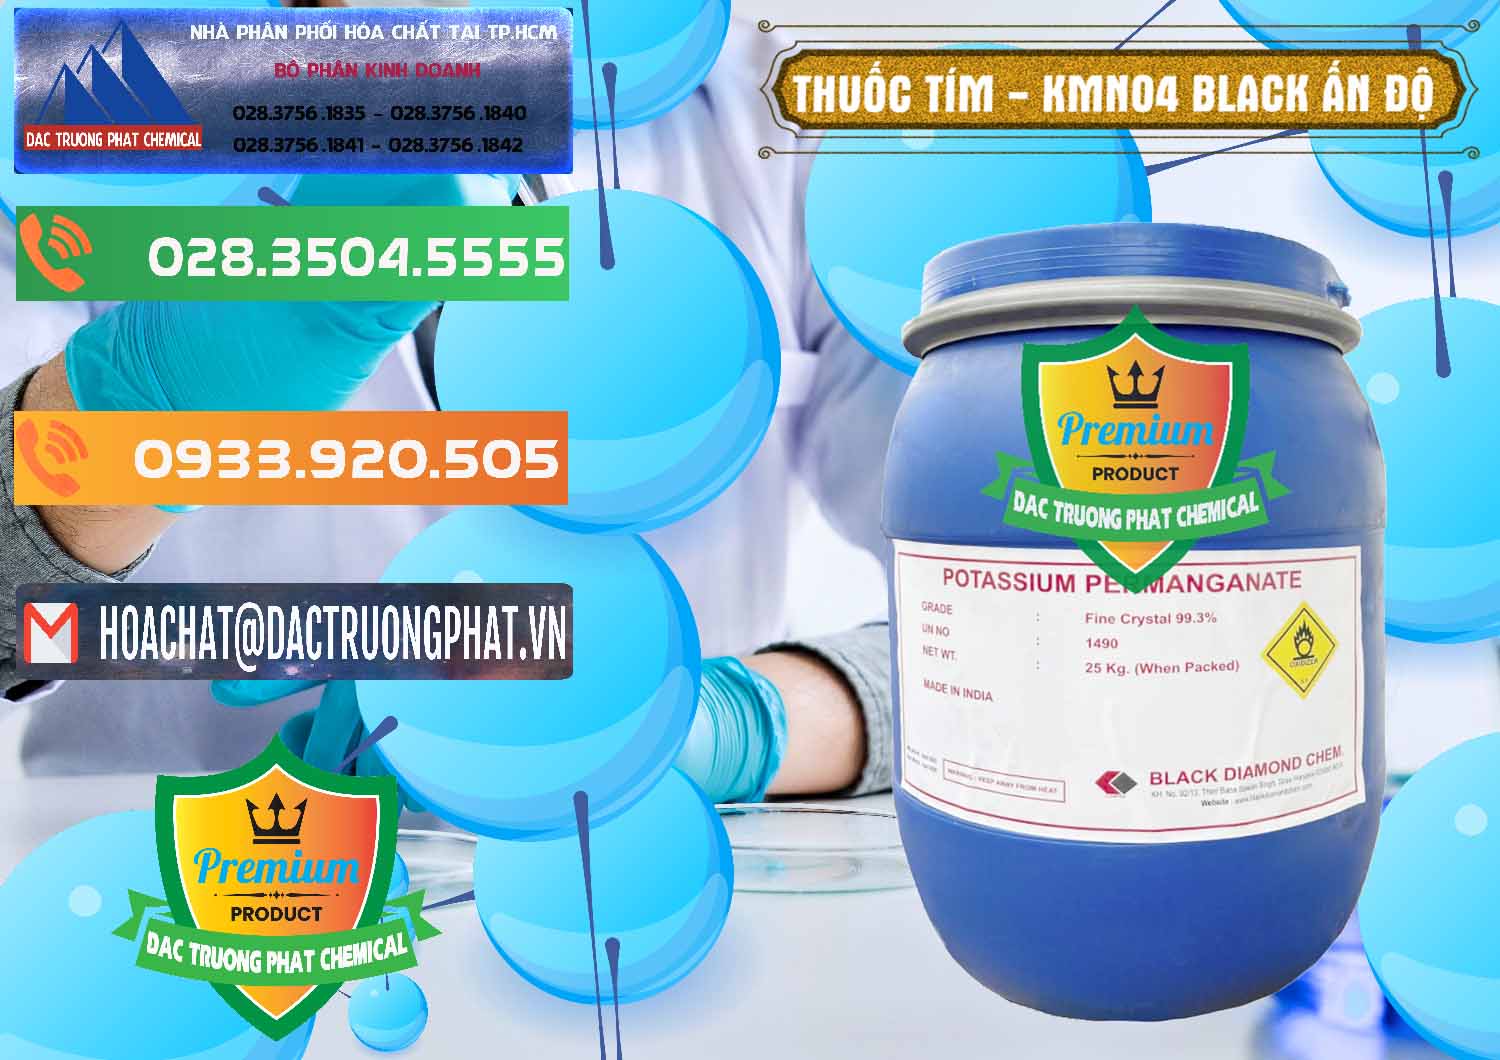 Cty nhập khẩu và bán Thuốc Tím - KMNO4 Black Diamond Ấn Độ India - 0414 - Nơi cung ứng - phân phối hóa chất tại TP.HCM - hoachatxulynuoc.com.vn